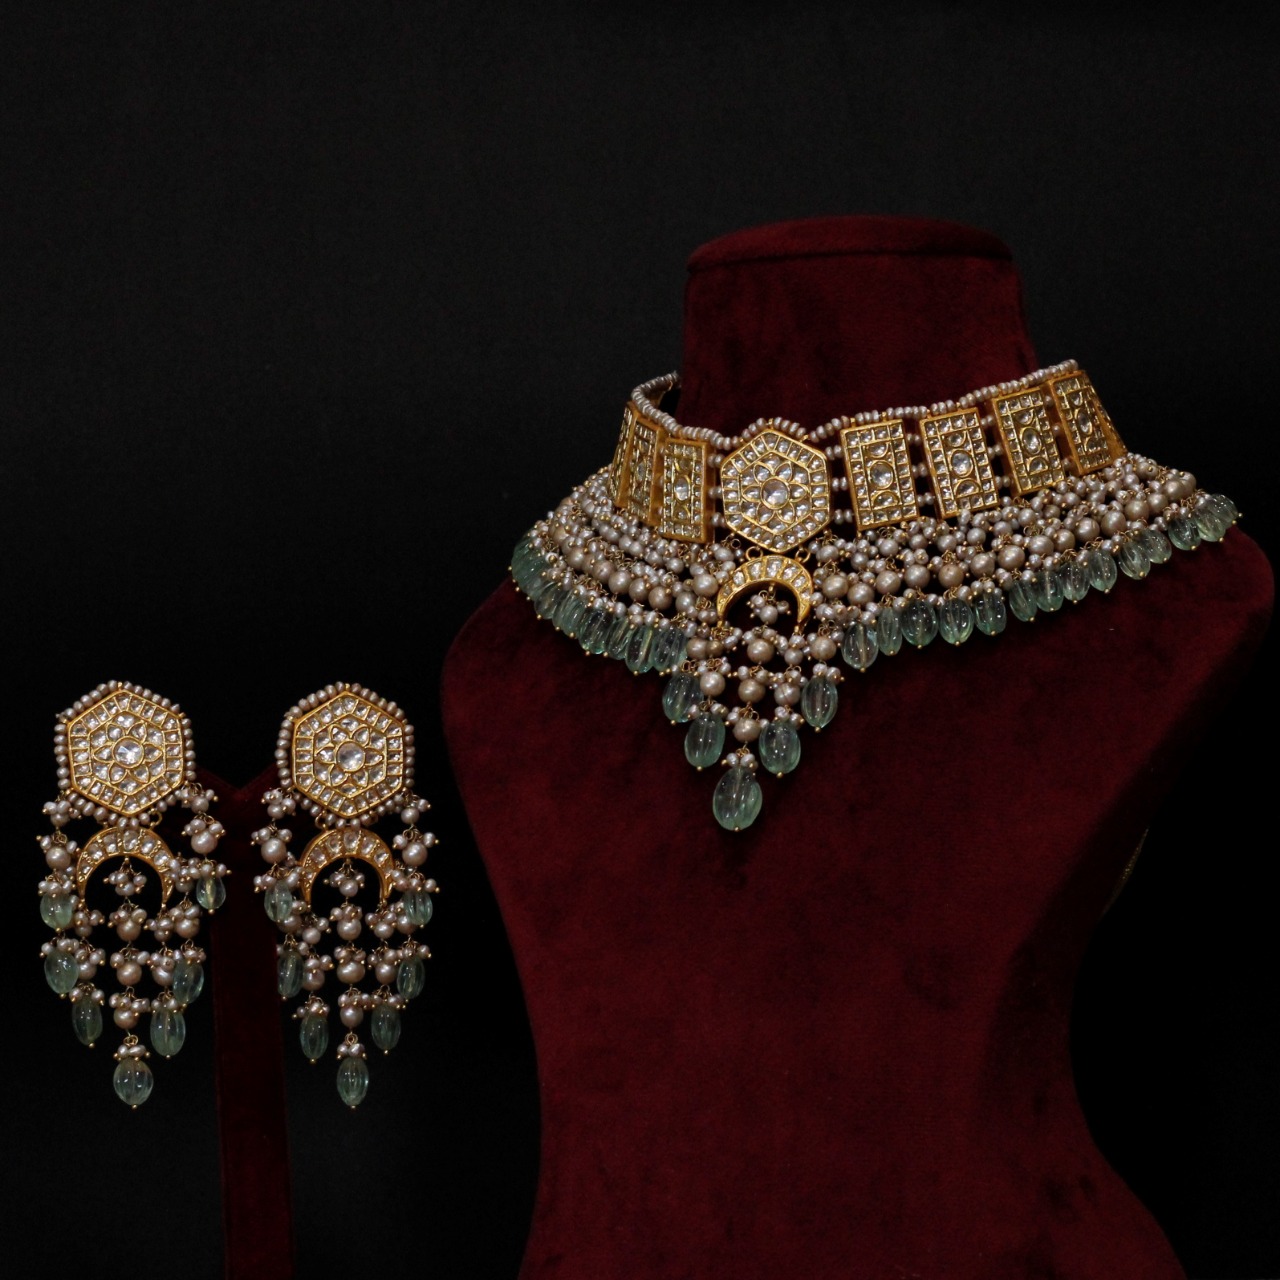 Top Jewellery Brands In India For Pre-Wedding Ceremonies